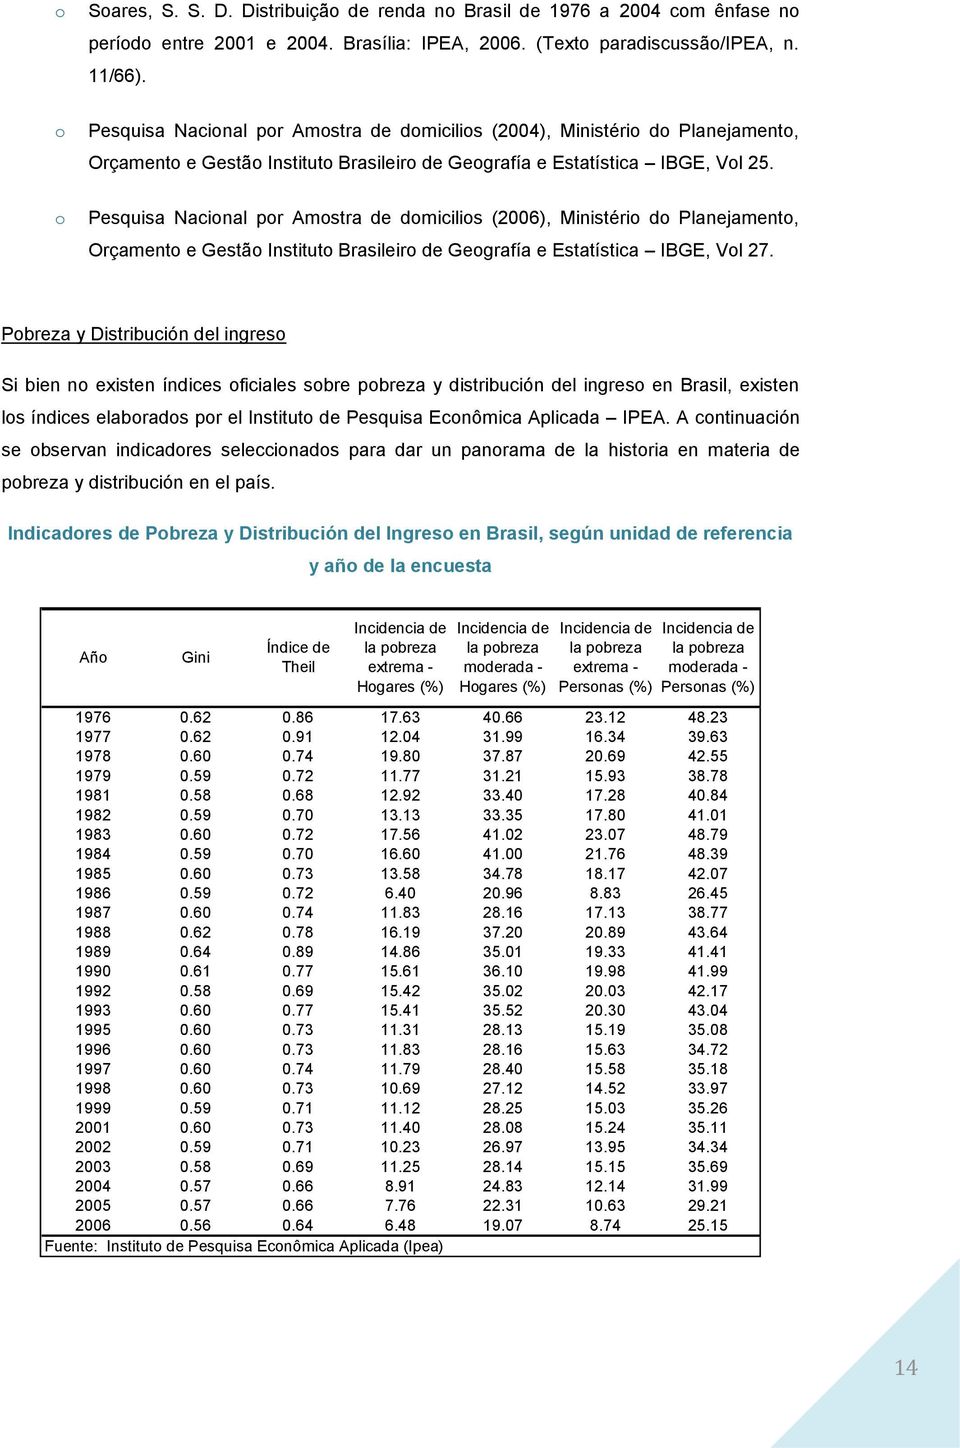 Pesquisa Nacinal pr Amstra de dmicilis (2006), Ministéri d Planejament, Orçament e Gestã Institut Brasileir de Gegrafía e Estatística IBGE, Vl 27.